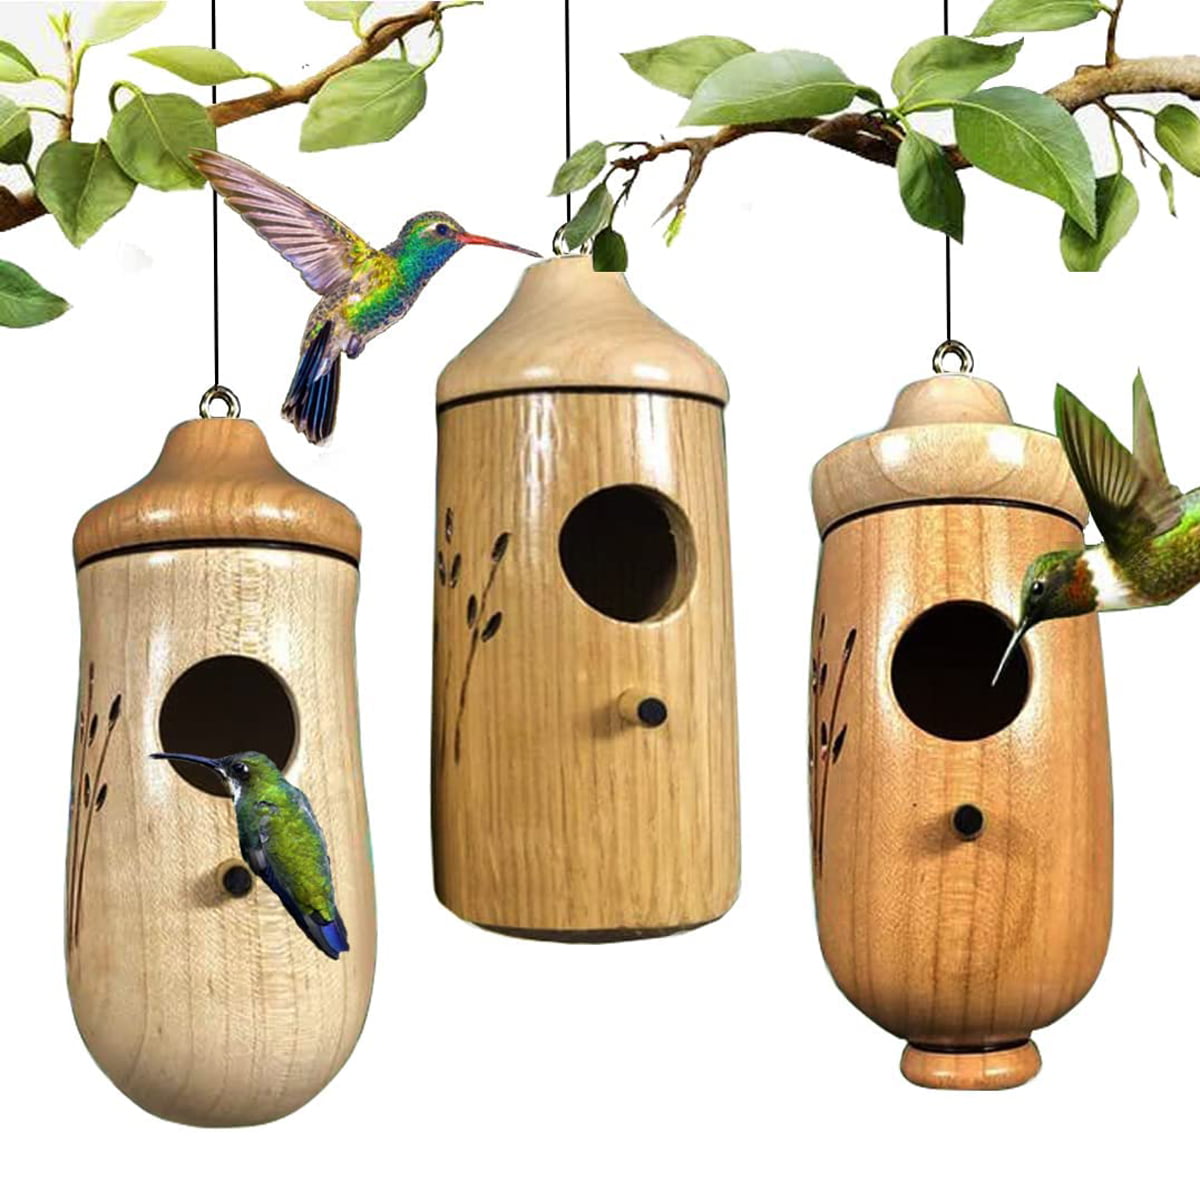 Hamiledyi Wooden Bird House,Hanging Outdoor Birdhouse Garden Patio Decorative for Wren Swallow Sparrow Dove Hummingbird Finch 